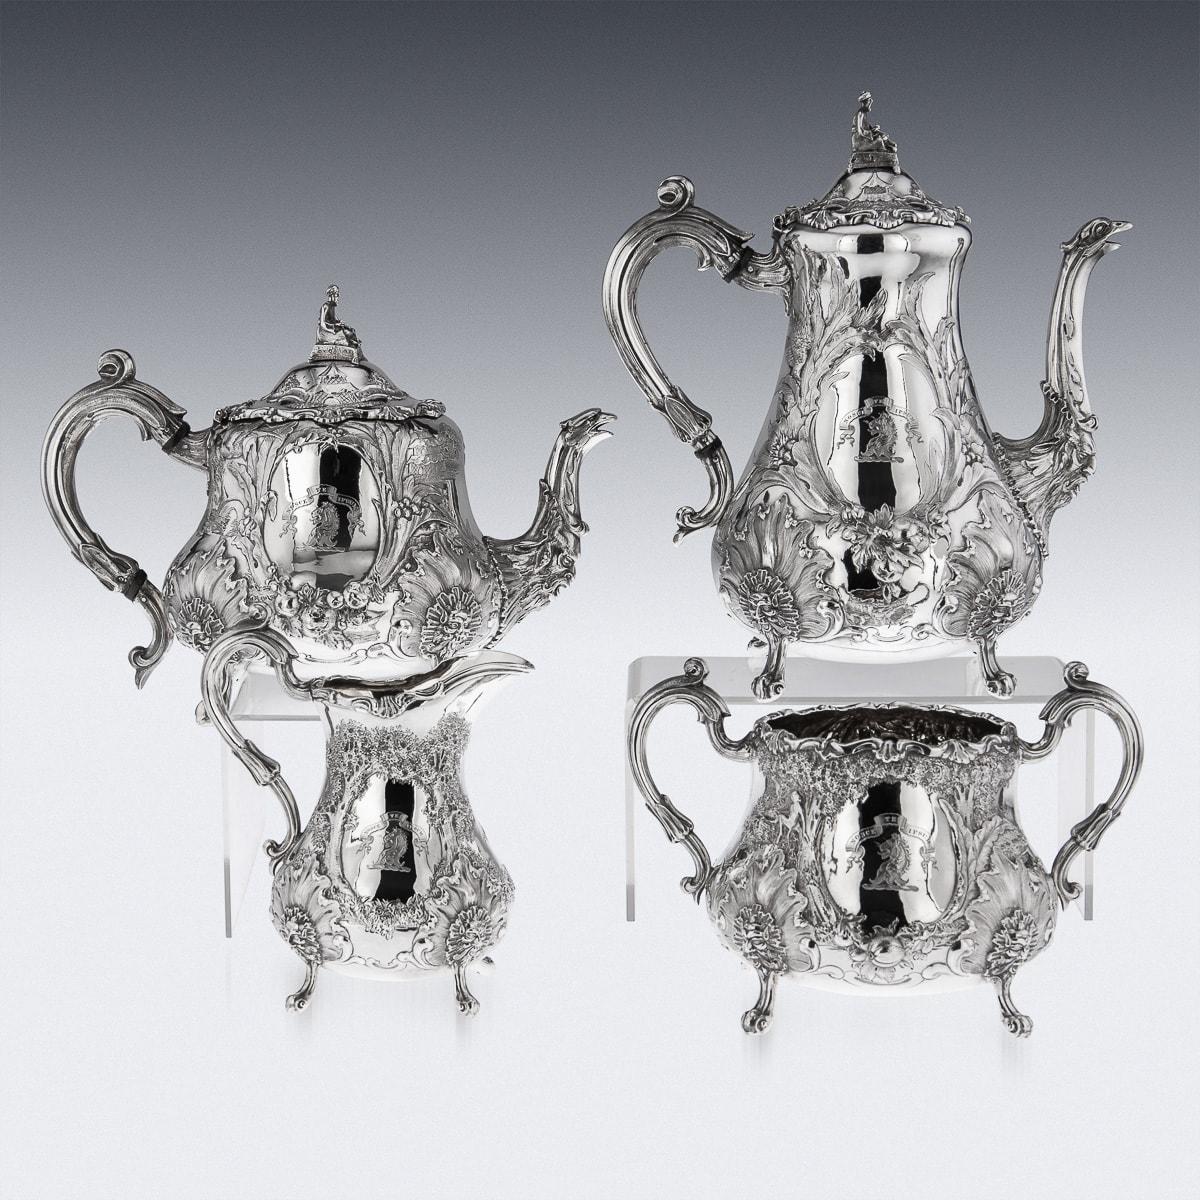 British 19th Century Victorian Solid Silver Orientalist 4 Piece Tea & Coffee Set, c.1844